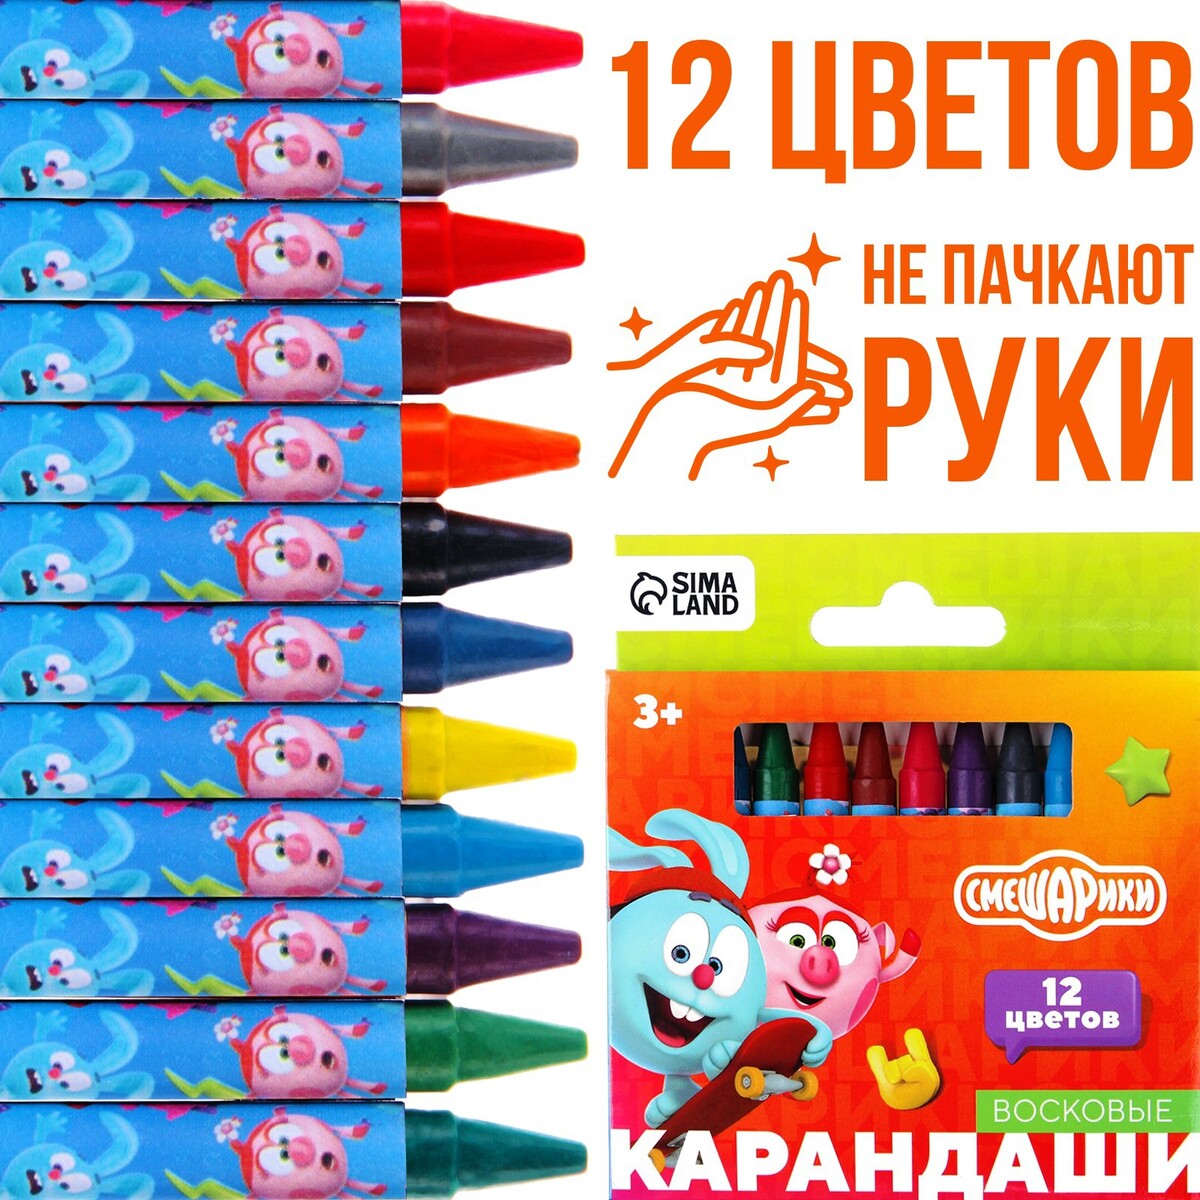 Восковые карандаши, набор 12 цветов, смешарики набор для игры в песке ведро совок грабли 3 формочки смешарики